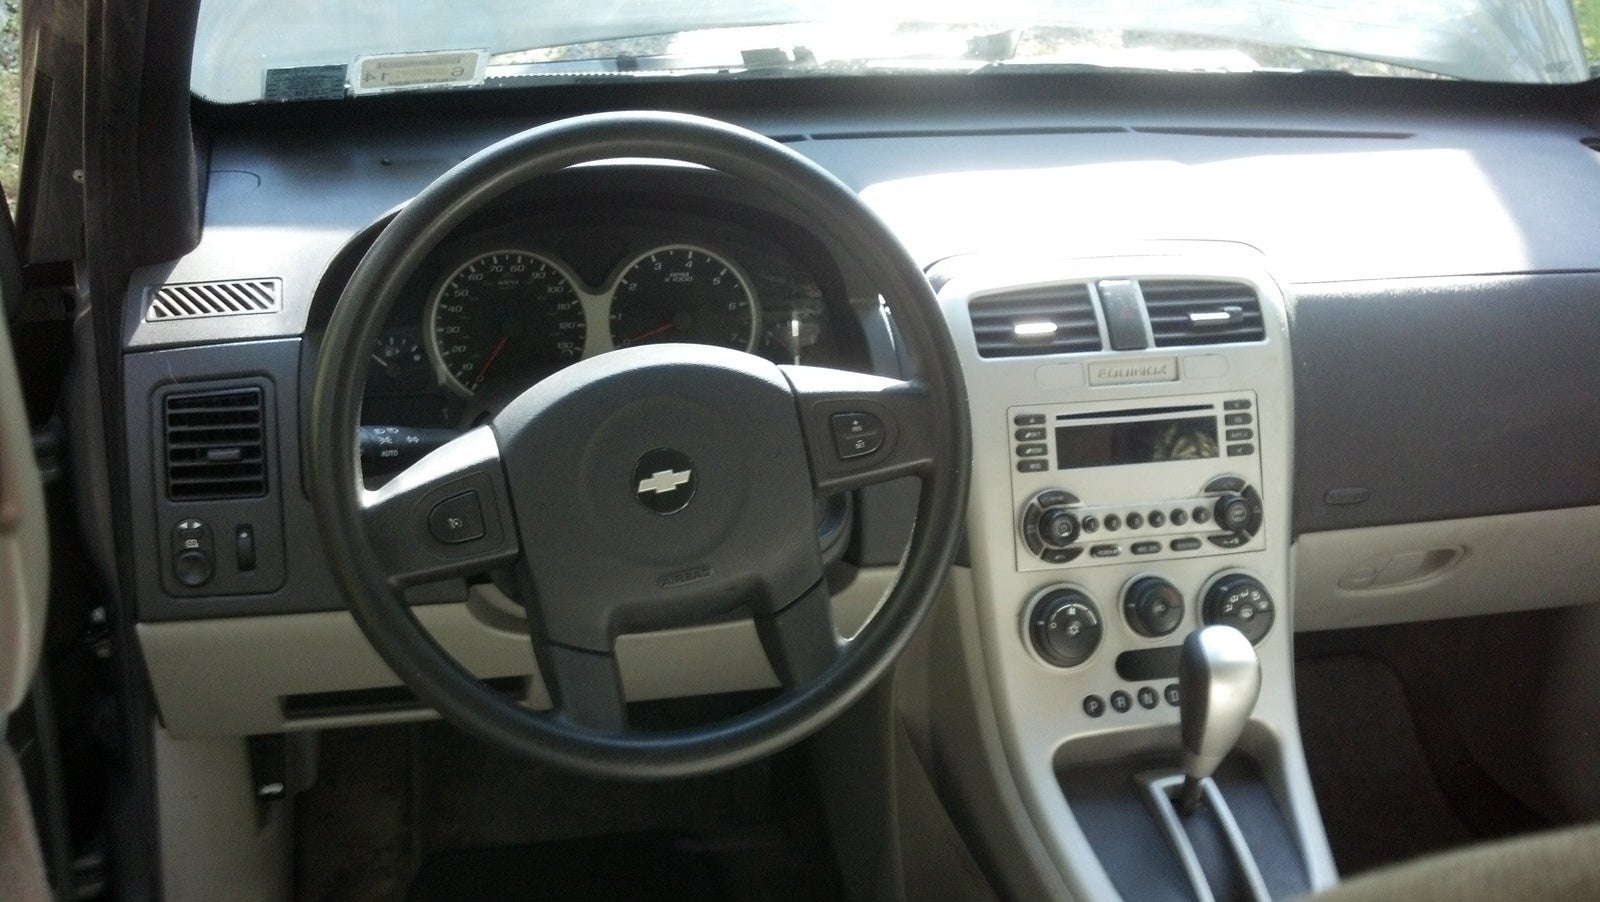 2006 Chevrolet Equinox - Pictures - CarGurus